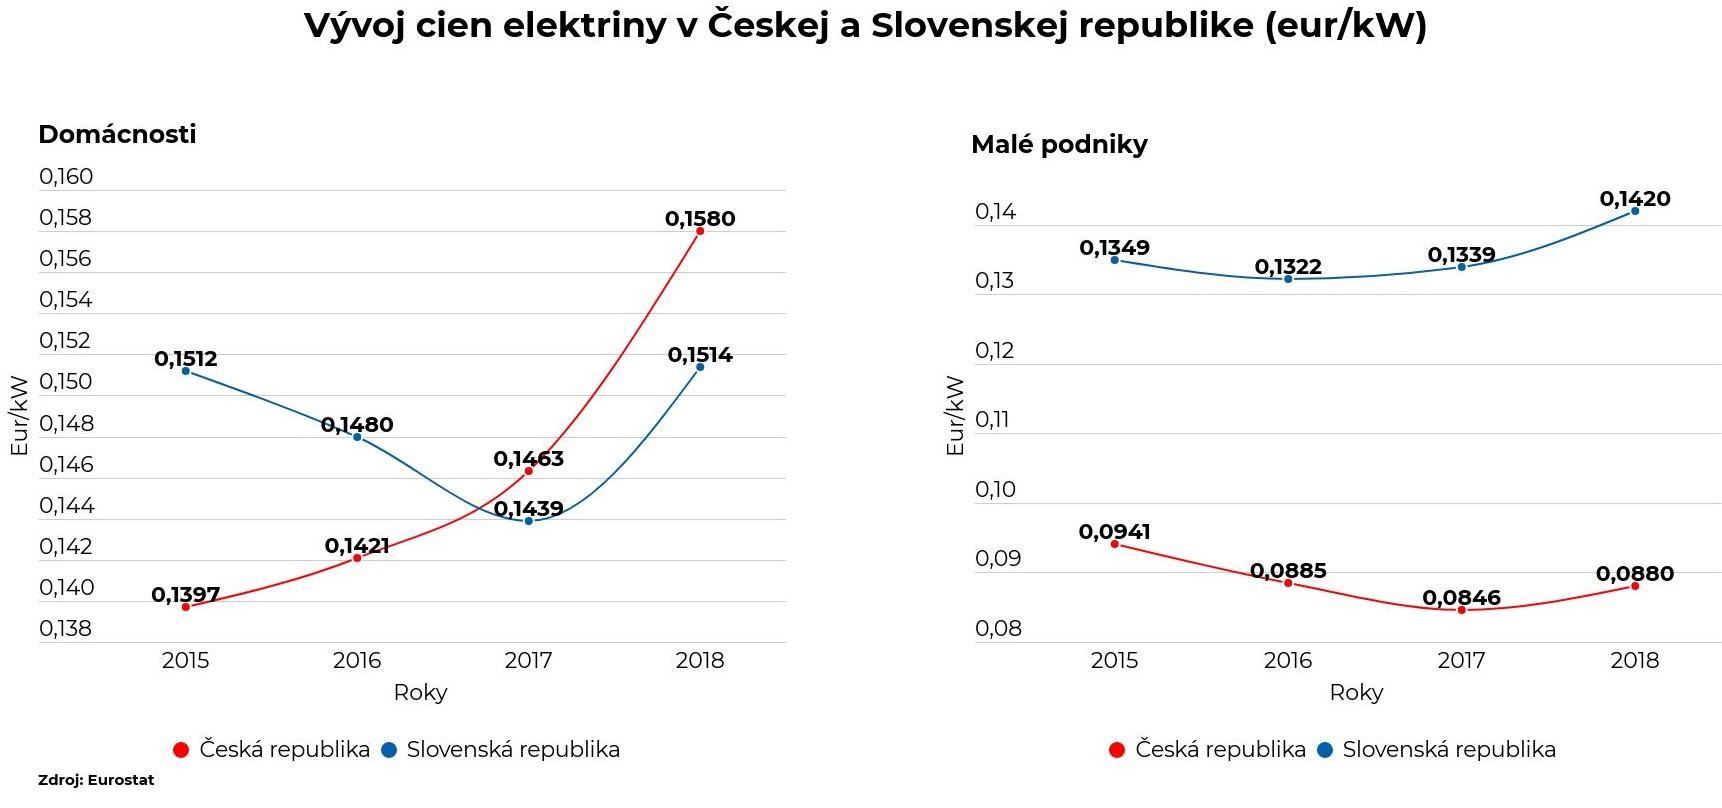 Graf 3: Vývoj cien elektriny v ČR a SR